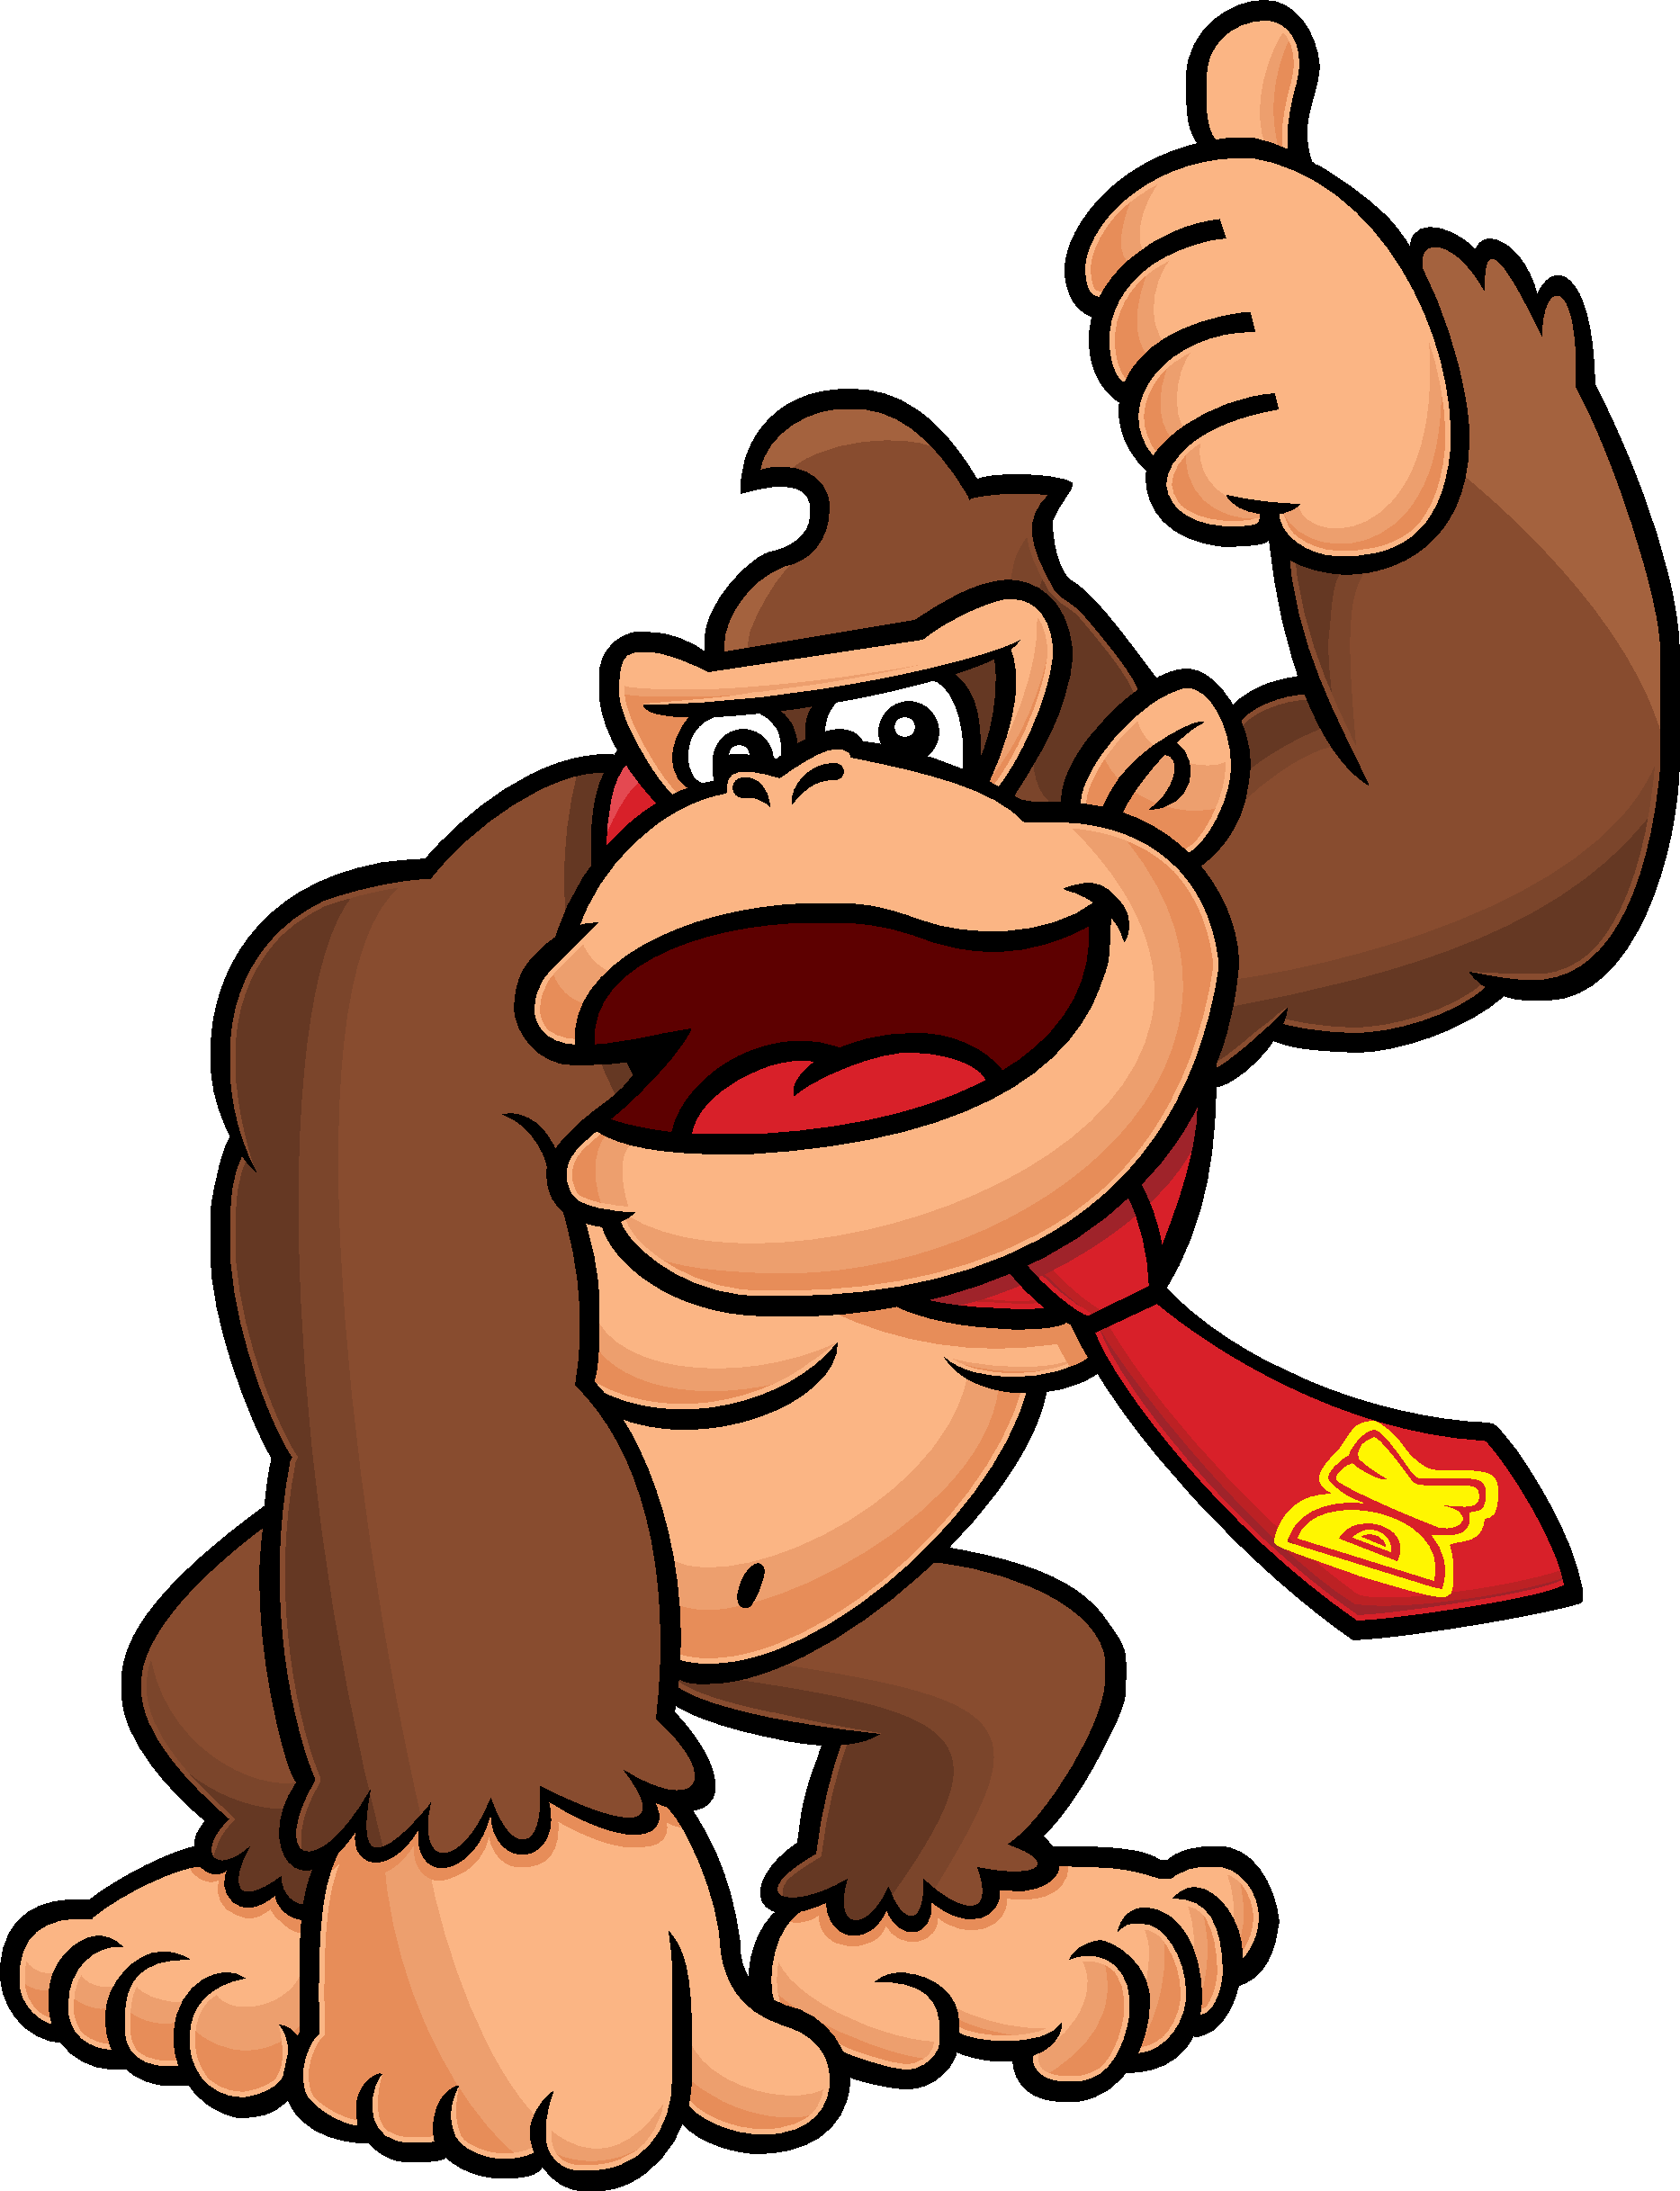 Donkey Kong Background PNG Image